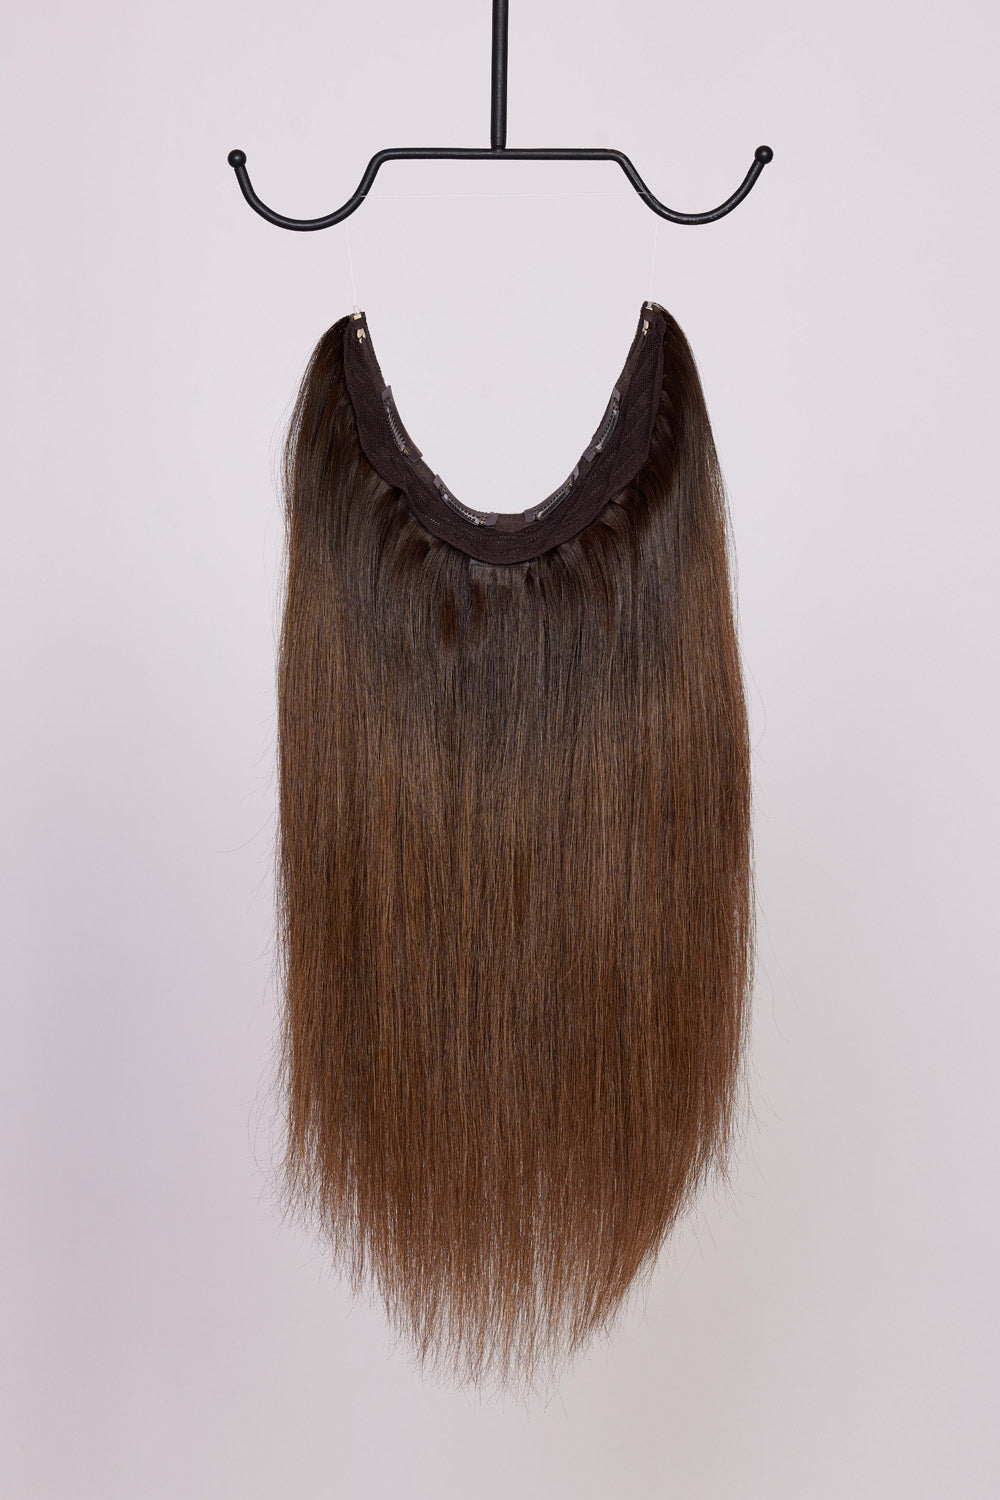 BHBD Hårband: Ljusare brun, 40 cm långt. 100% äkta Remy hår. Kan användas som clip-on, halo eller ponytail.